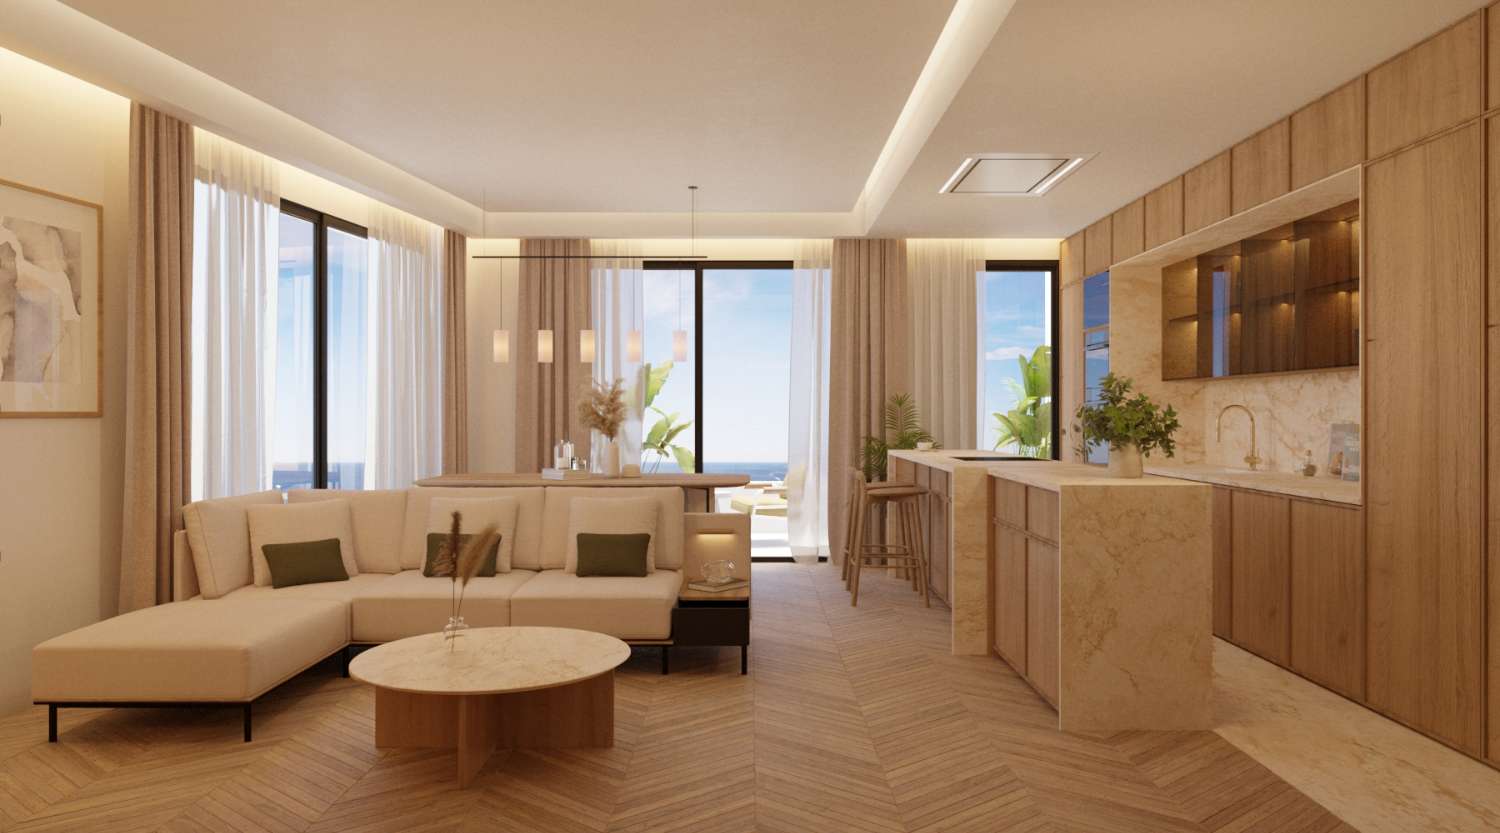 منازل فاخرة جديدة تمامًا مكونة من 4 غرف نوم مع إطلالات على البحر، آخر 4 وحدات! من 1,560,000 يورو